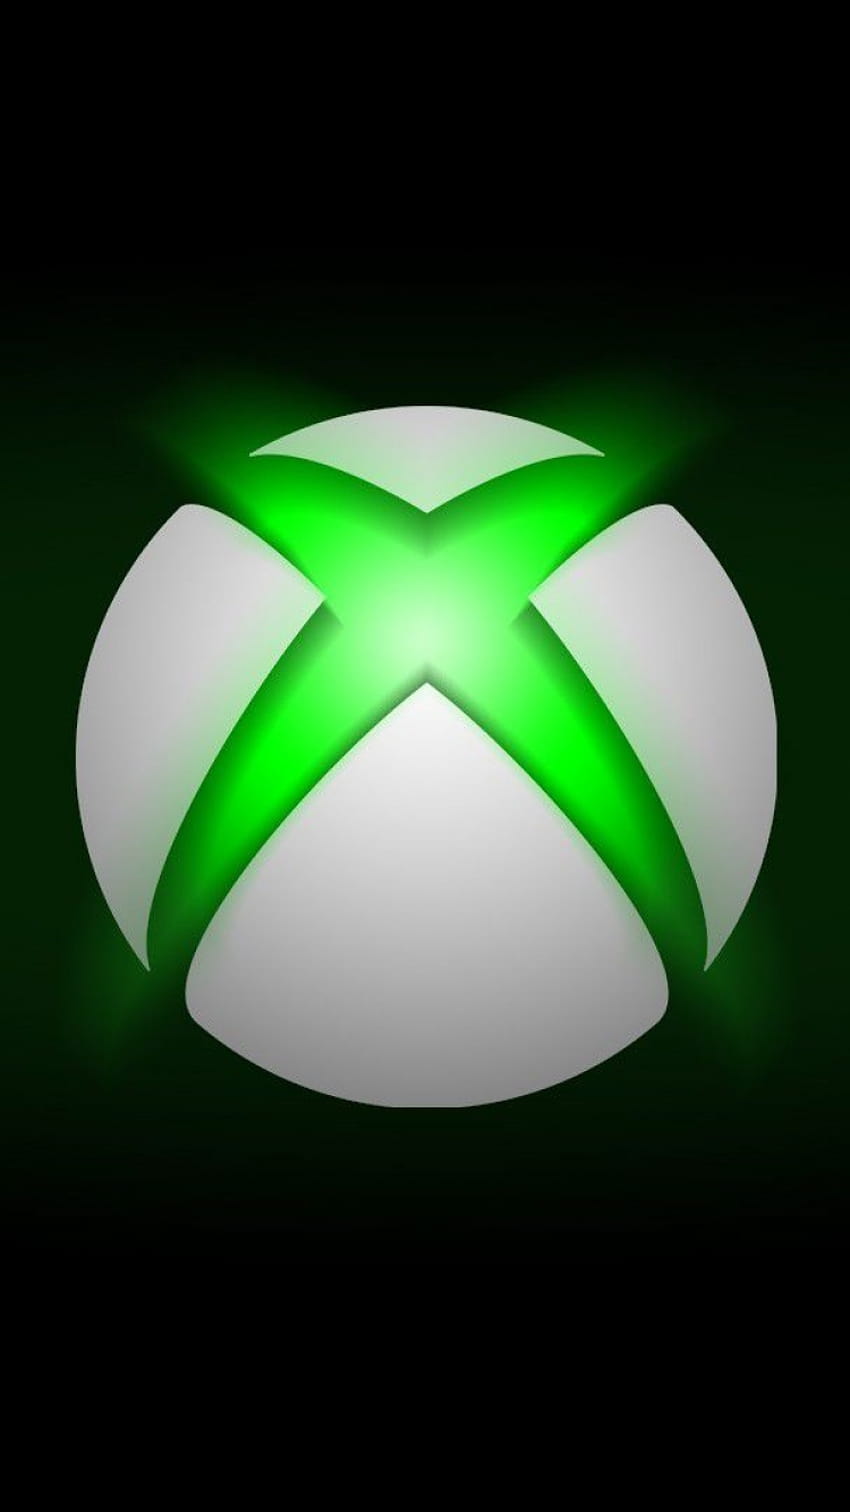 Аватарки xbox. Xbox. Логотип хбокс. Xbox 360 лого.